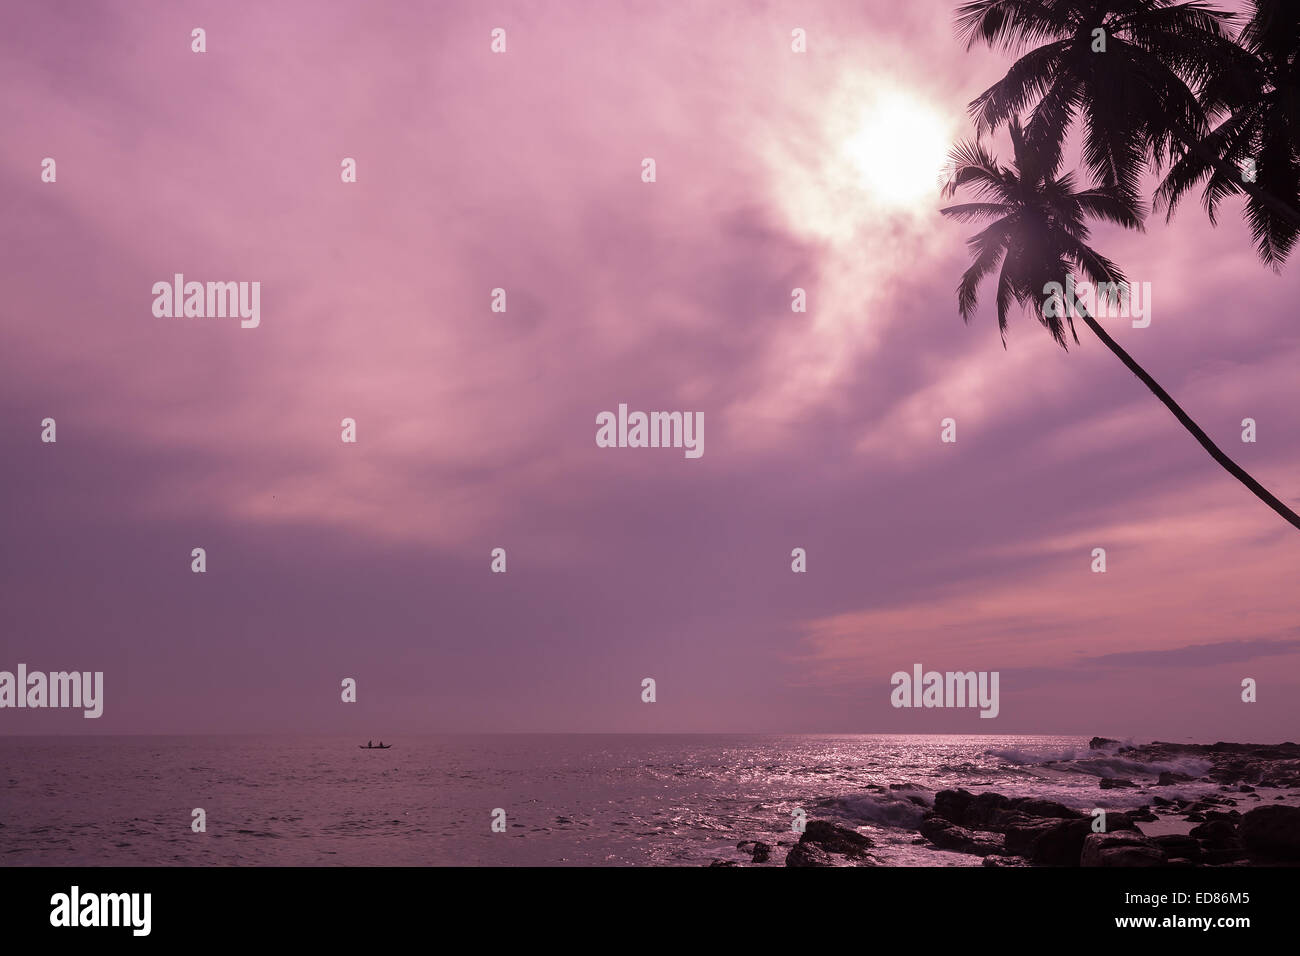 Piccola barca da pesca in oceano tropicale paesaggio con orizzonte e palme da cocco in viola colore rosa filtro. Foto Stock